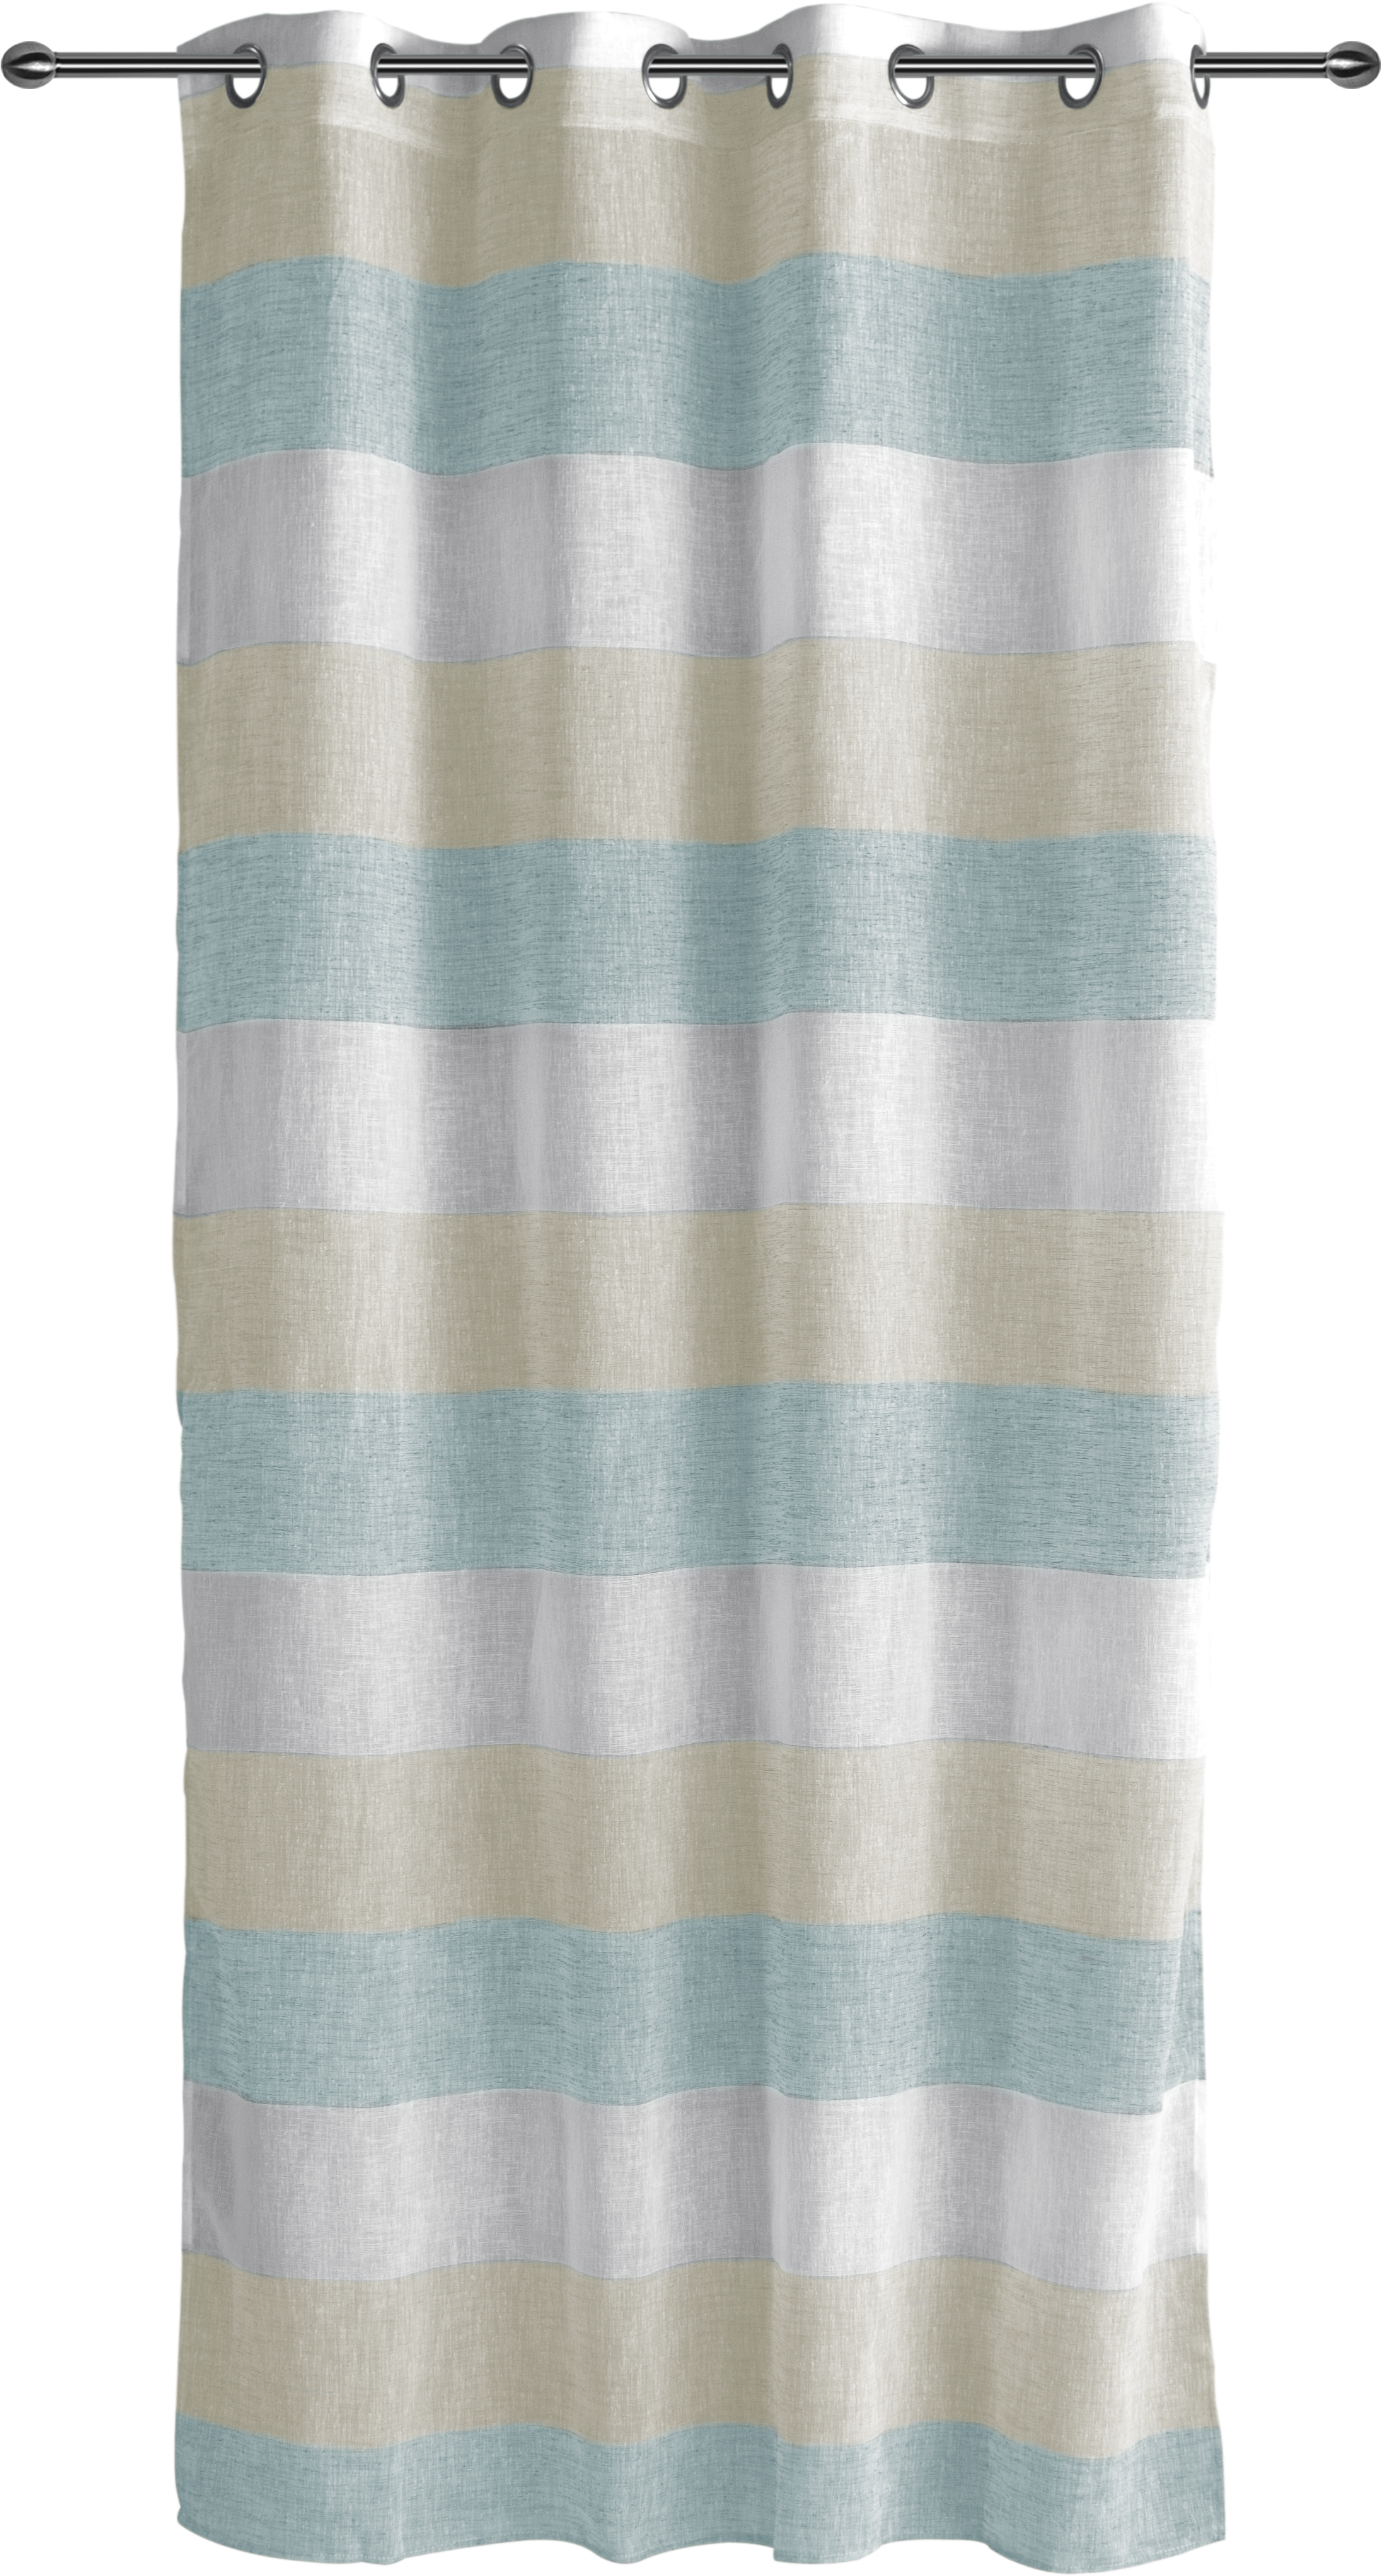 Striped Curtain Design